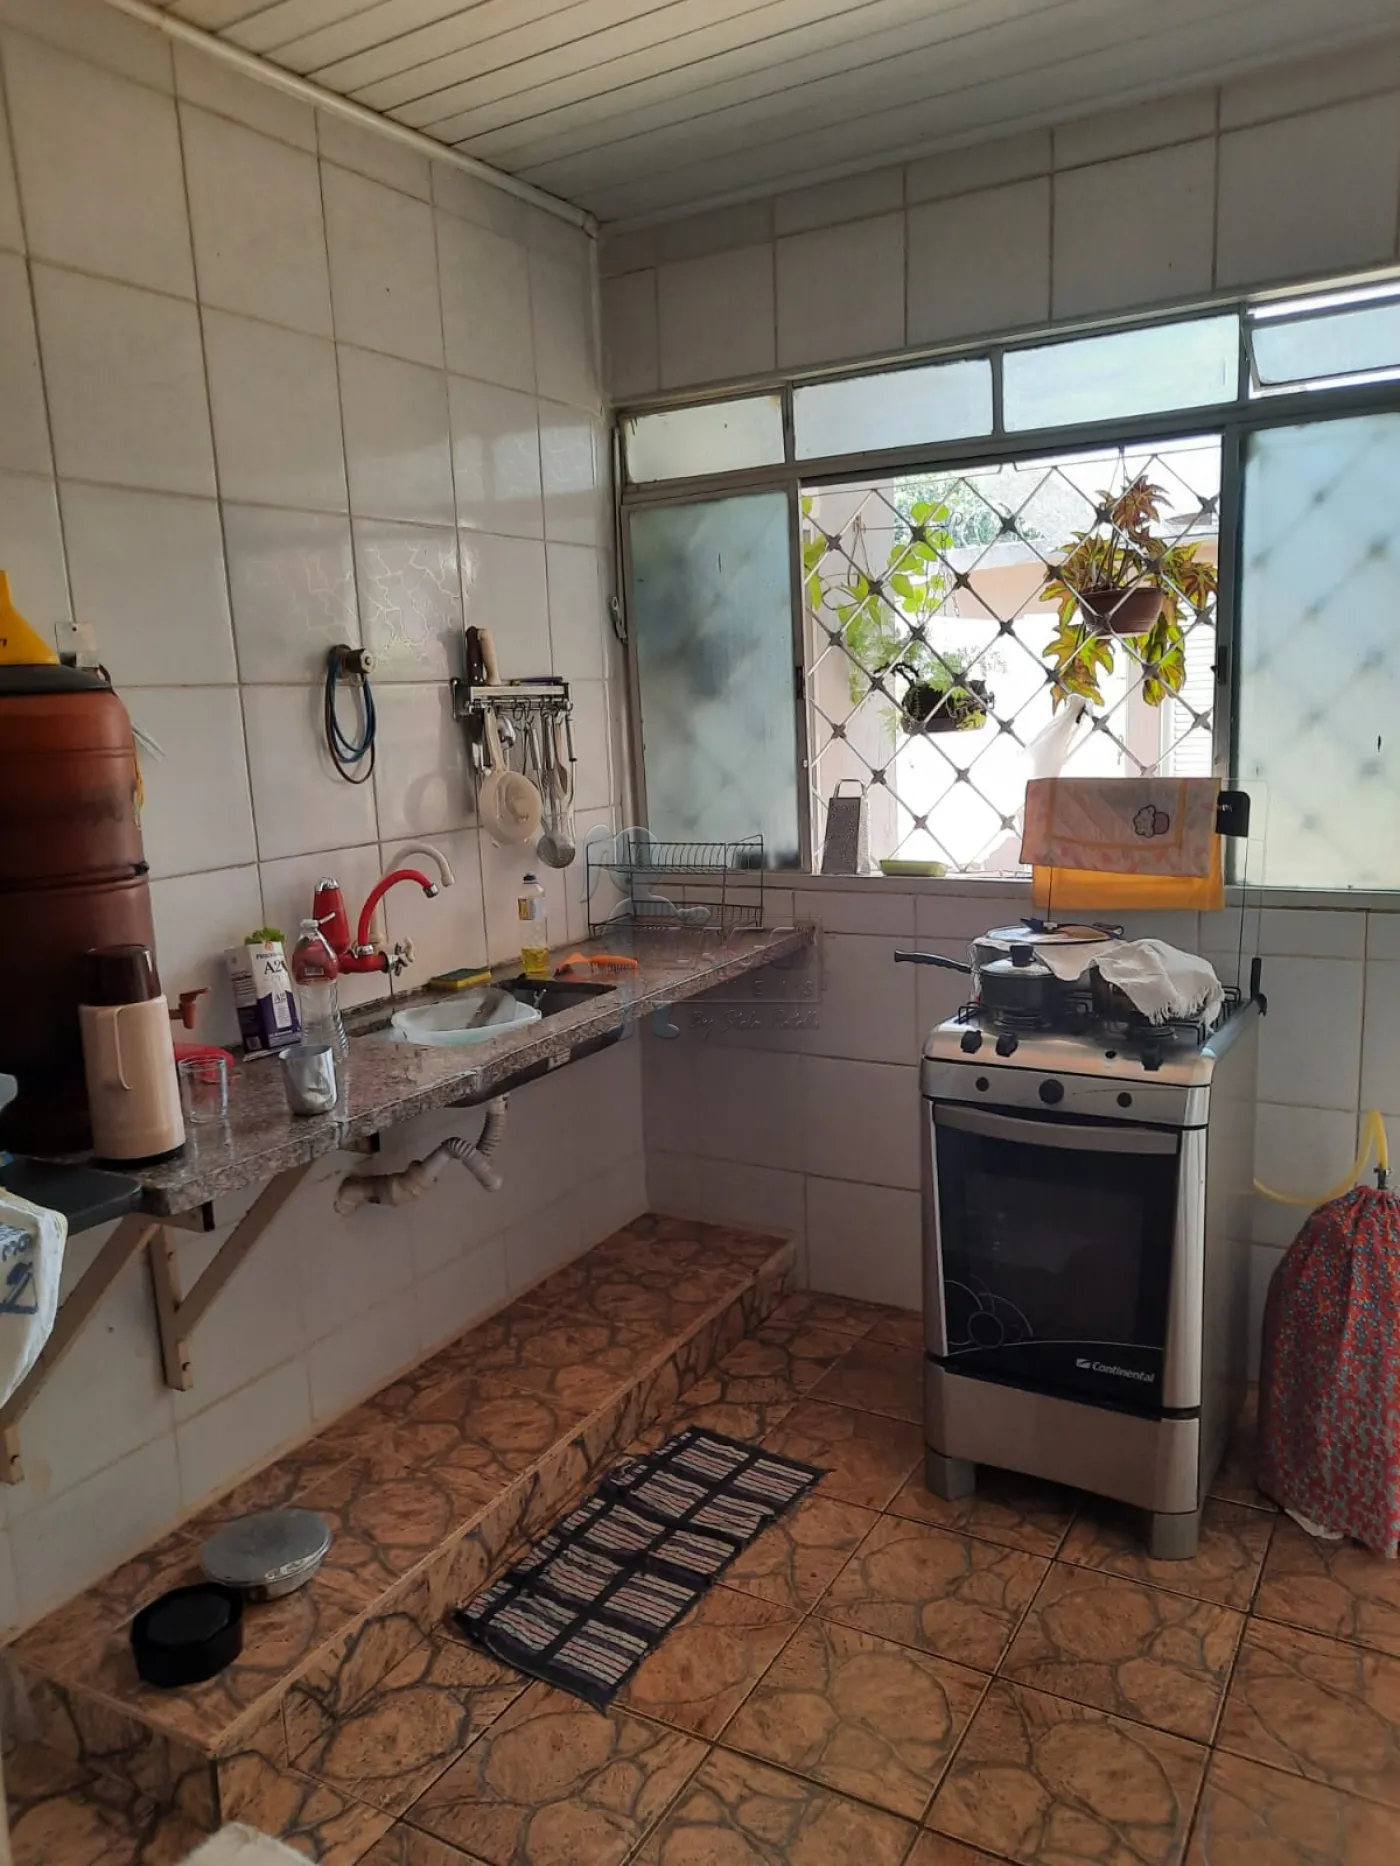 Comprar Casas / Padrão em Ribeirão Preto R$ 300.000,00 - Foto 28